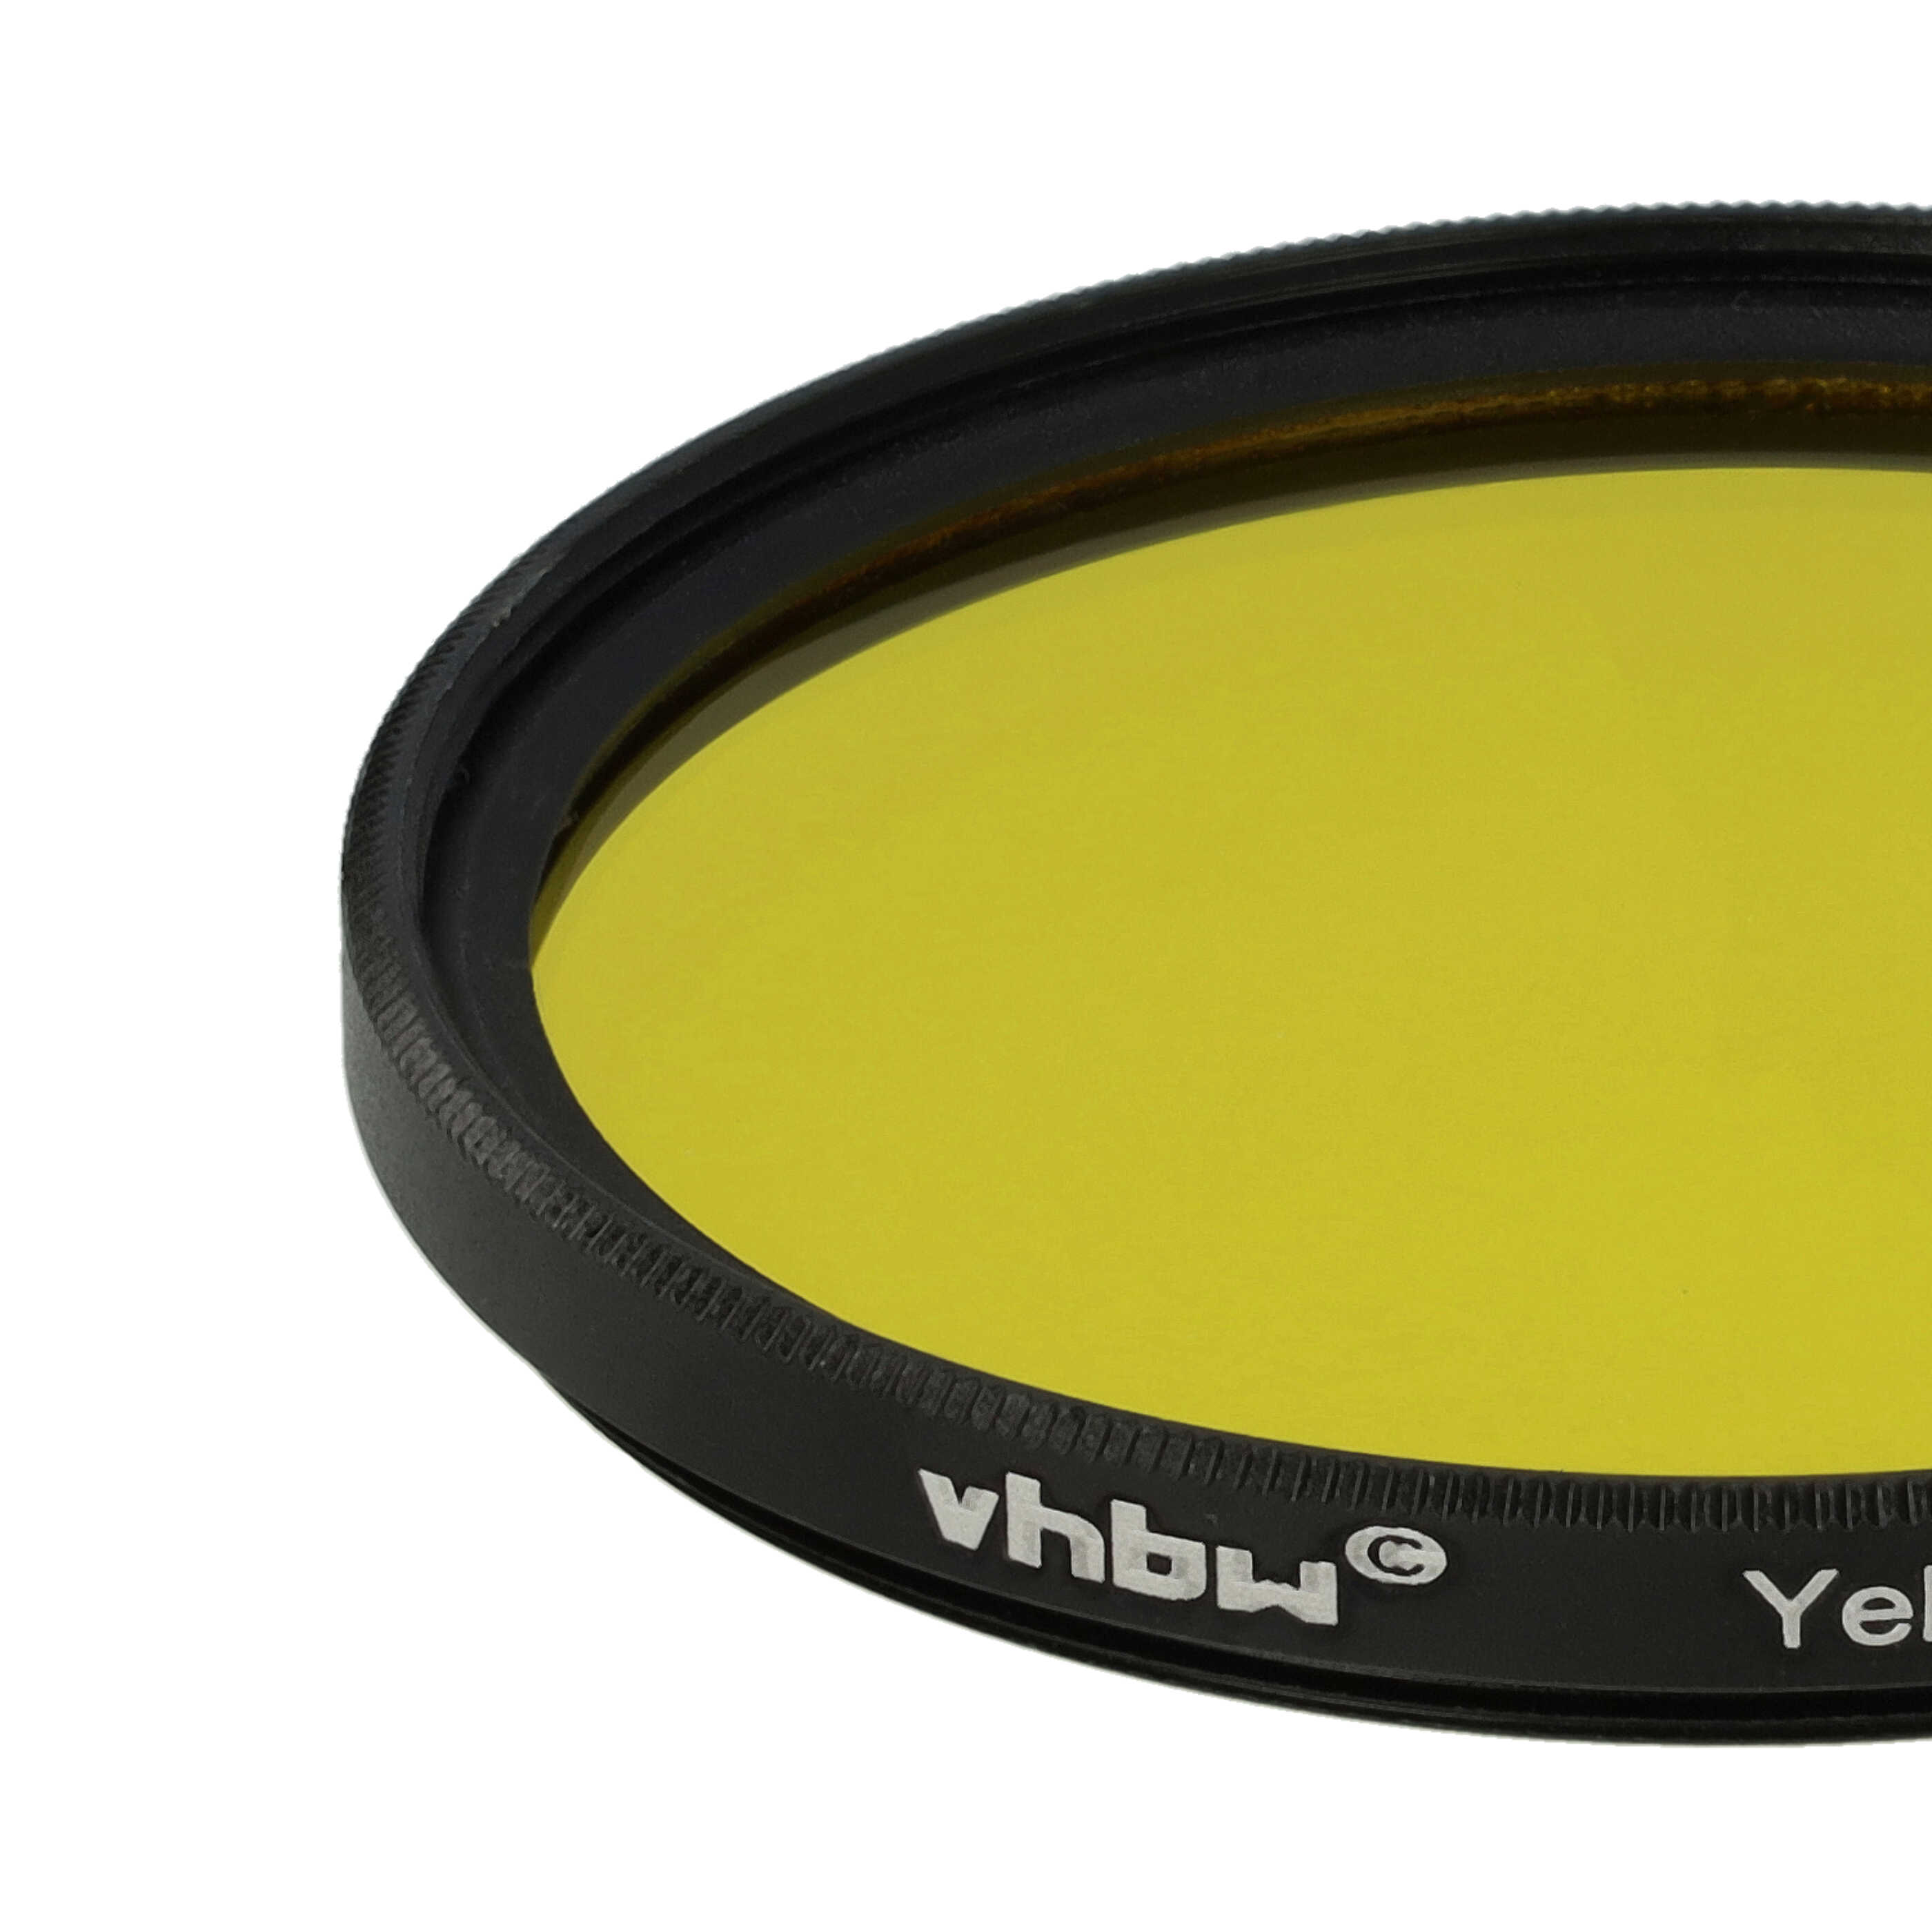 Filtro de color para objetivo de cámara con rosca de filtro de 55 mm - Filtro amarillo